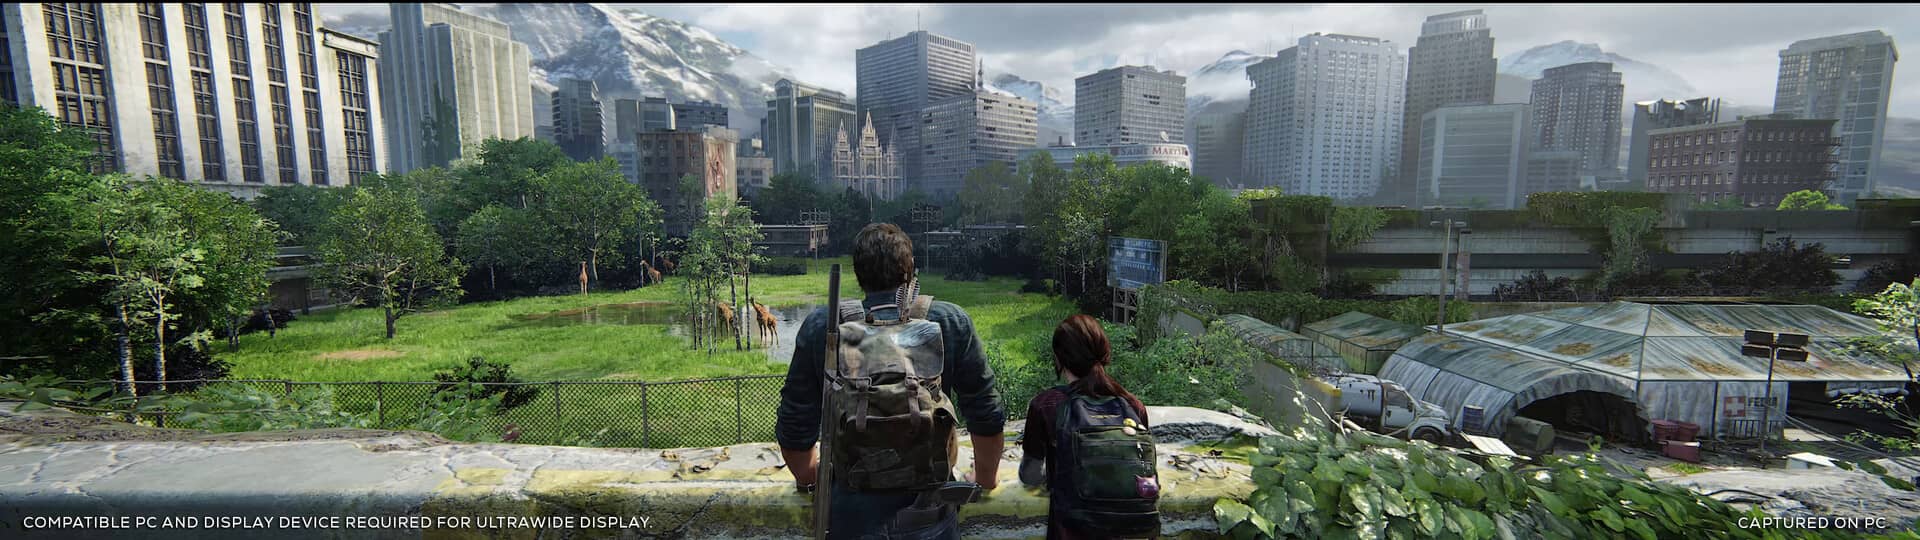 The Last of Us™ Part I - náhledový obrázek